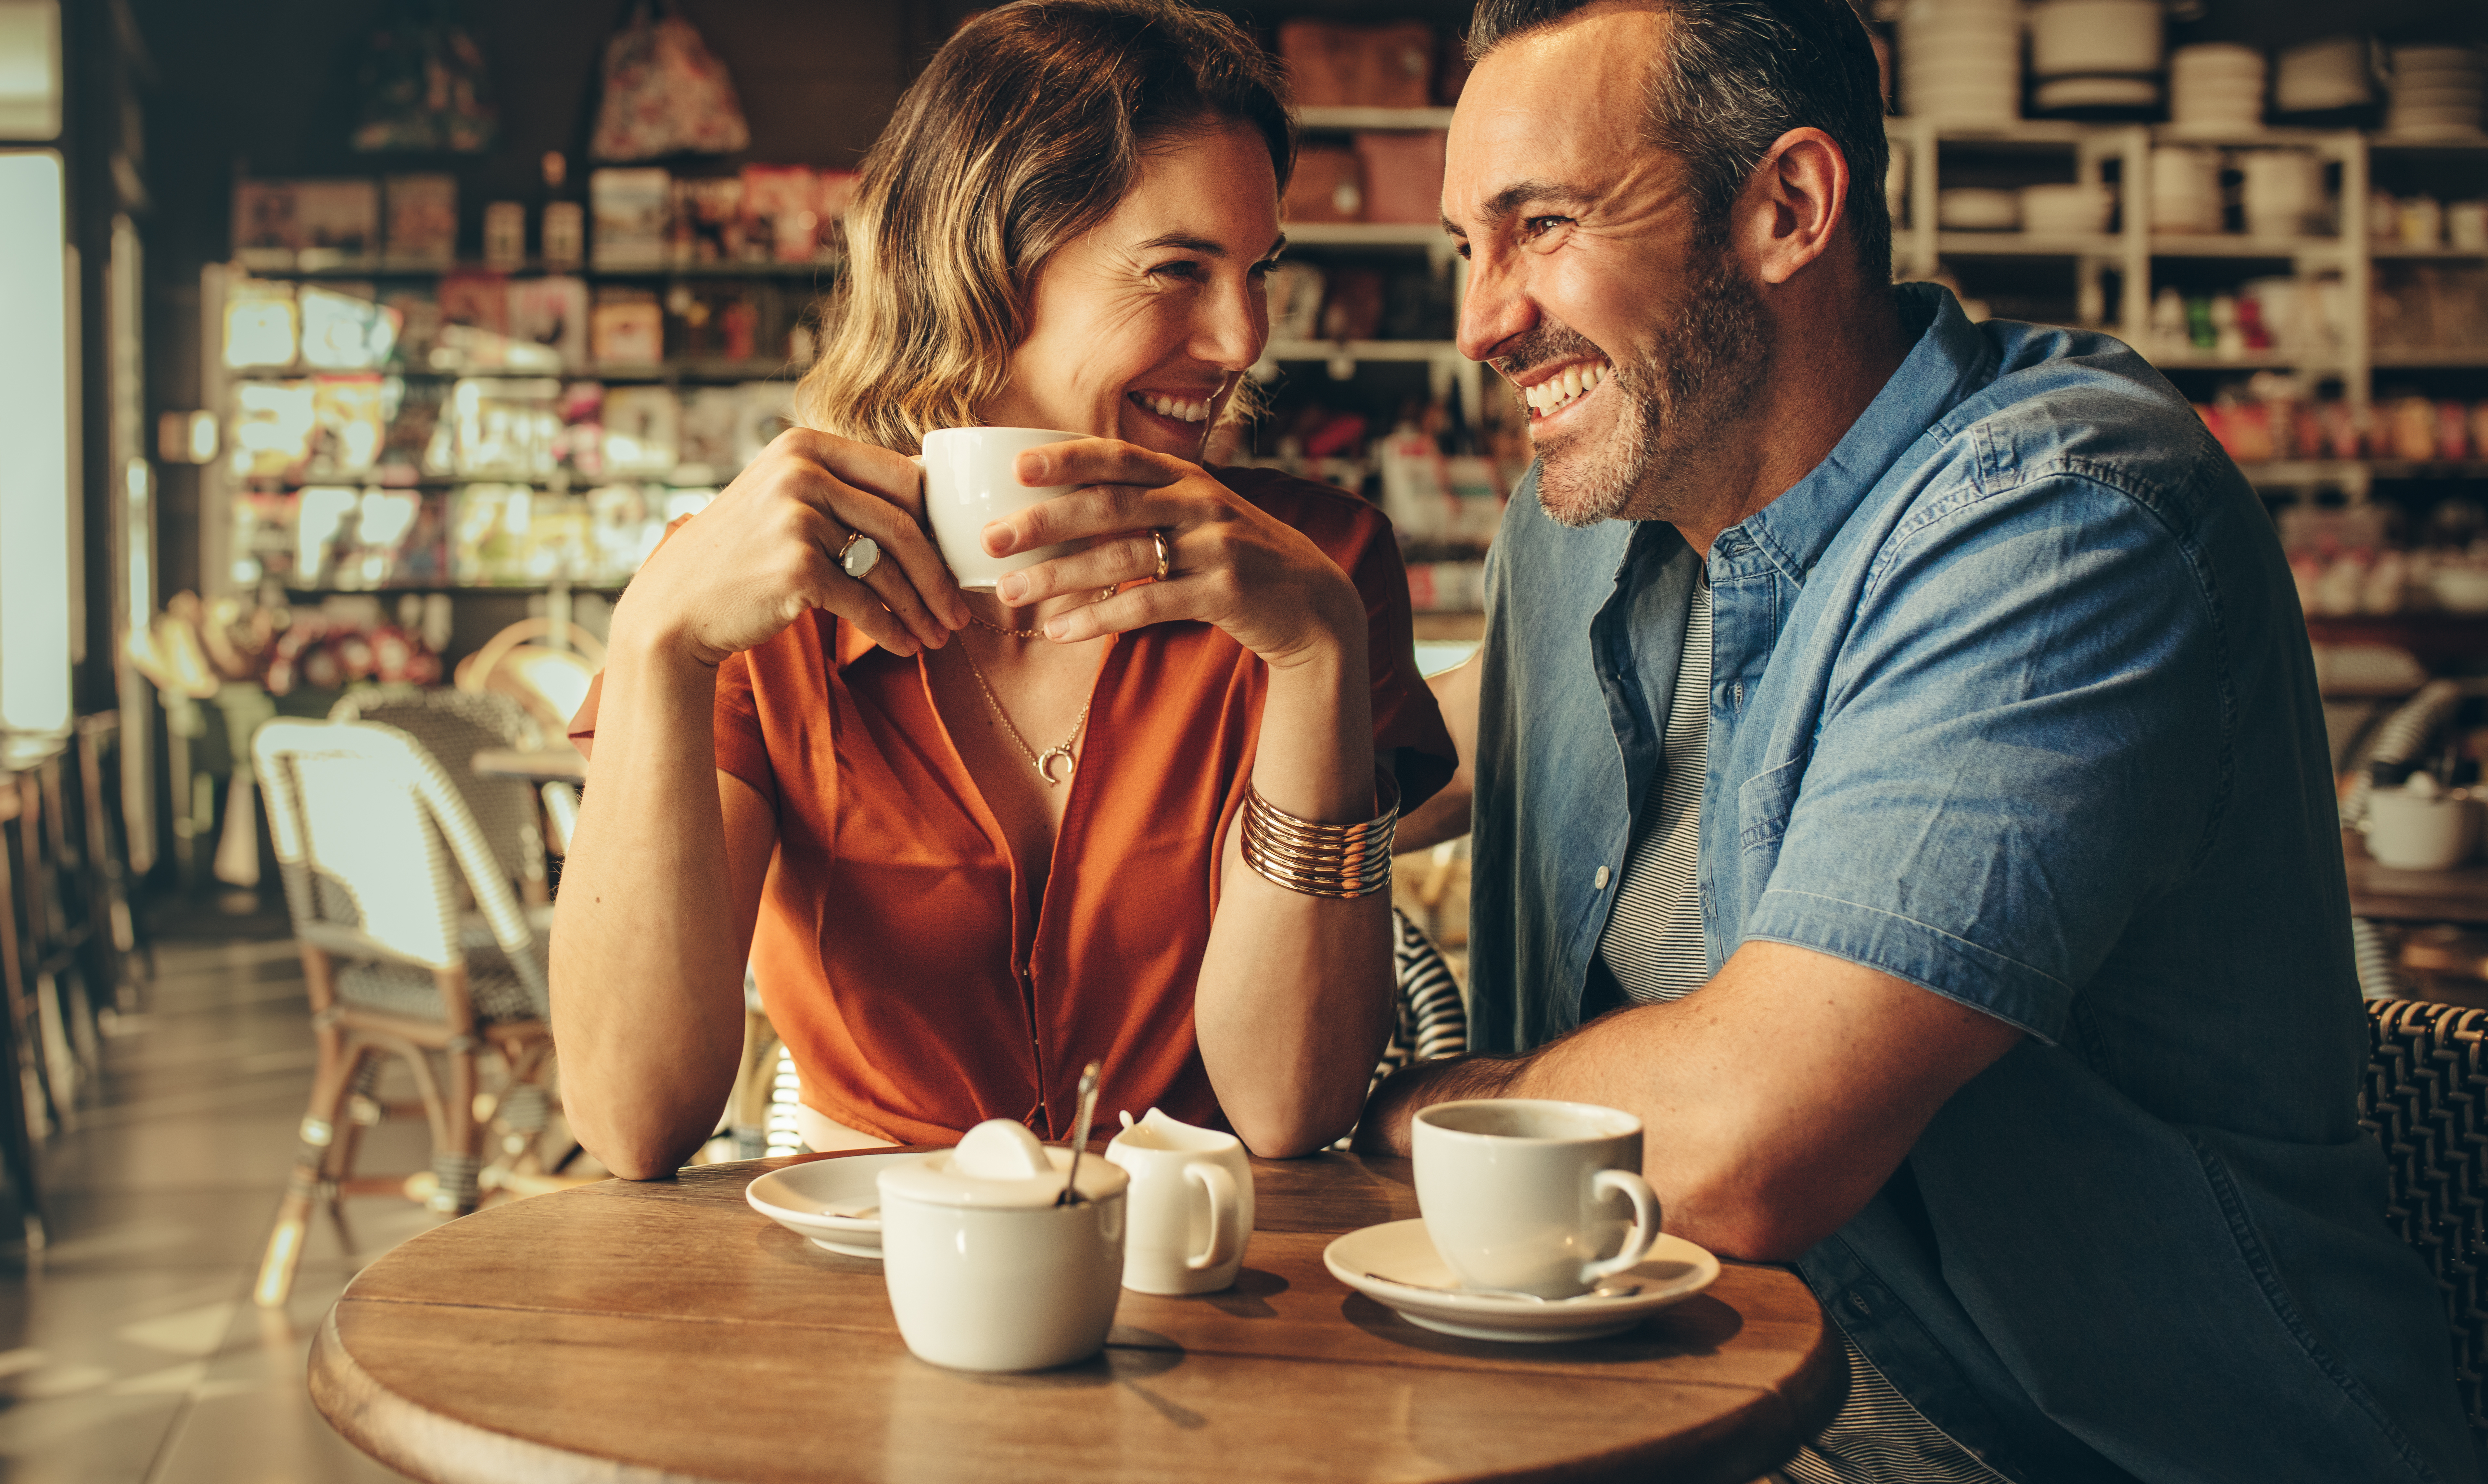 Ein glückliches Paar, das beim Kaffee lacht | Quelle: Shutterstock